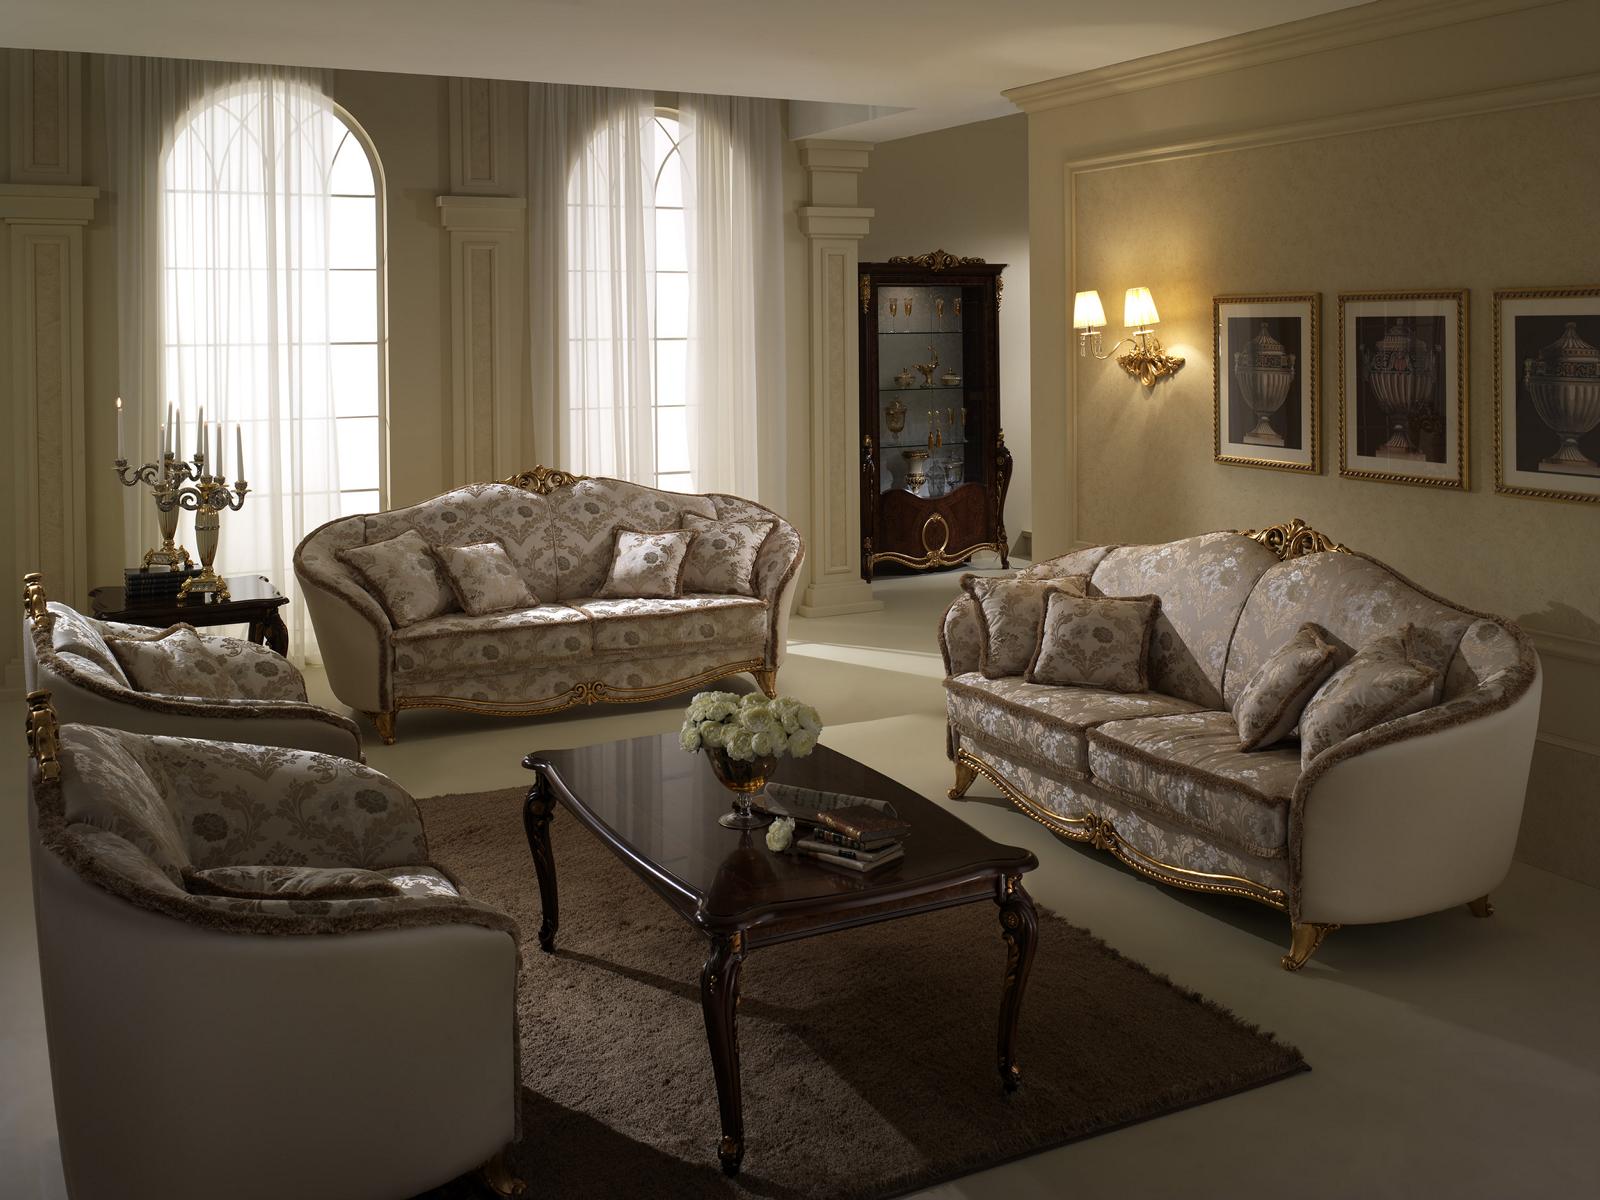 Luxus Klasse 3+1+1 Italienische Möbel Sofagarnitur Couch Sofa Neu arredoclassic™